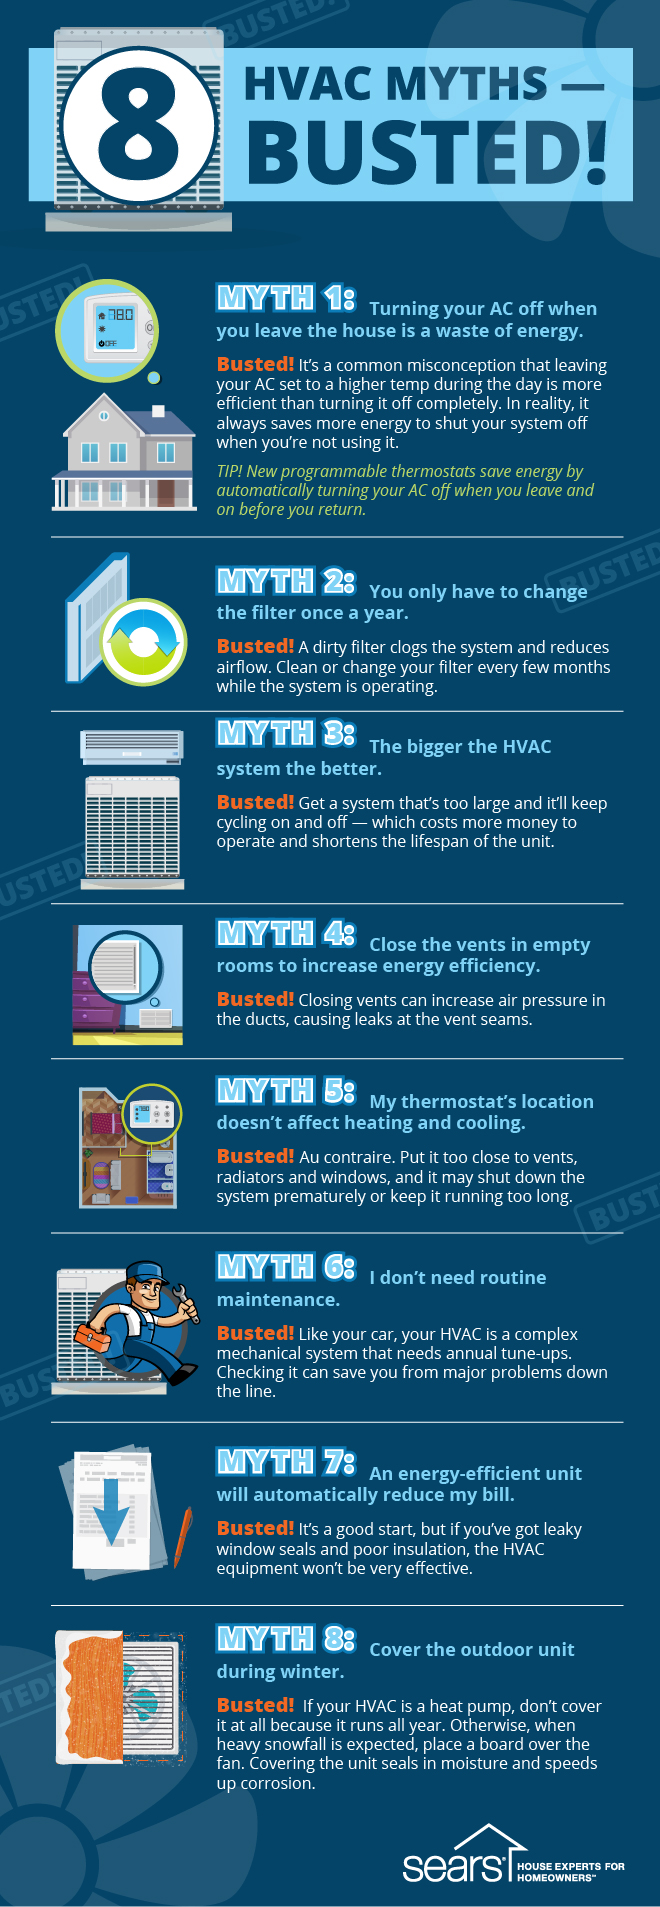 HVAC myths